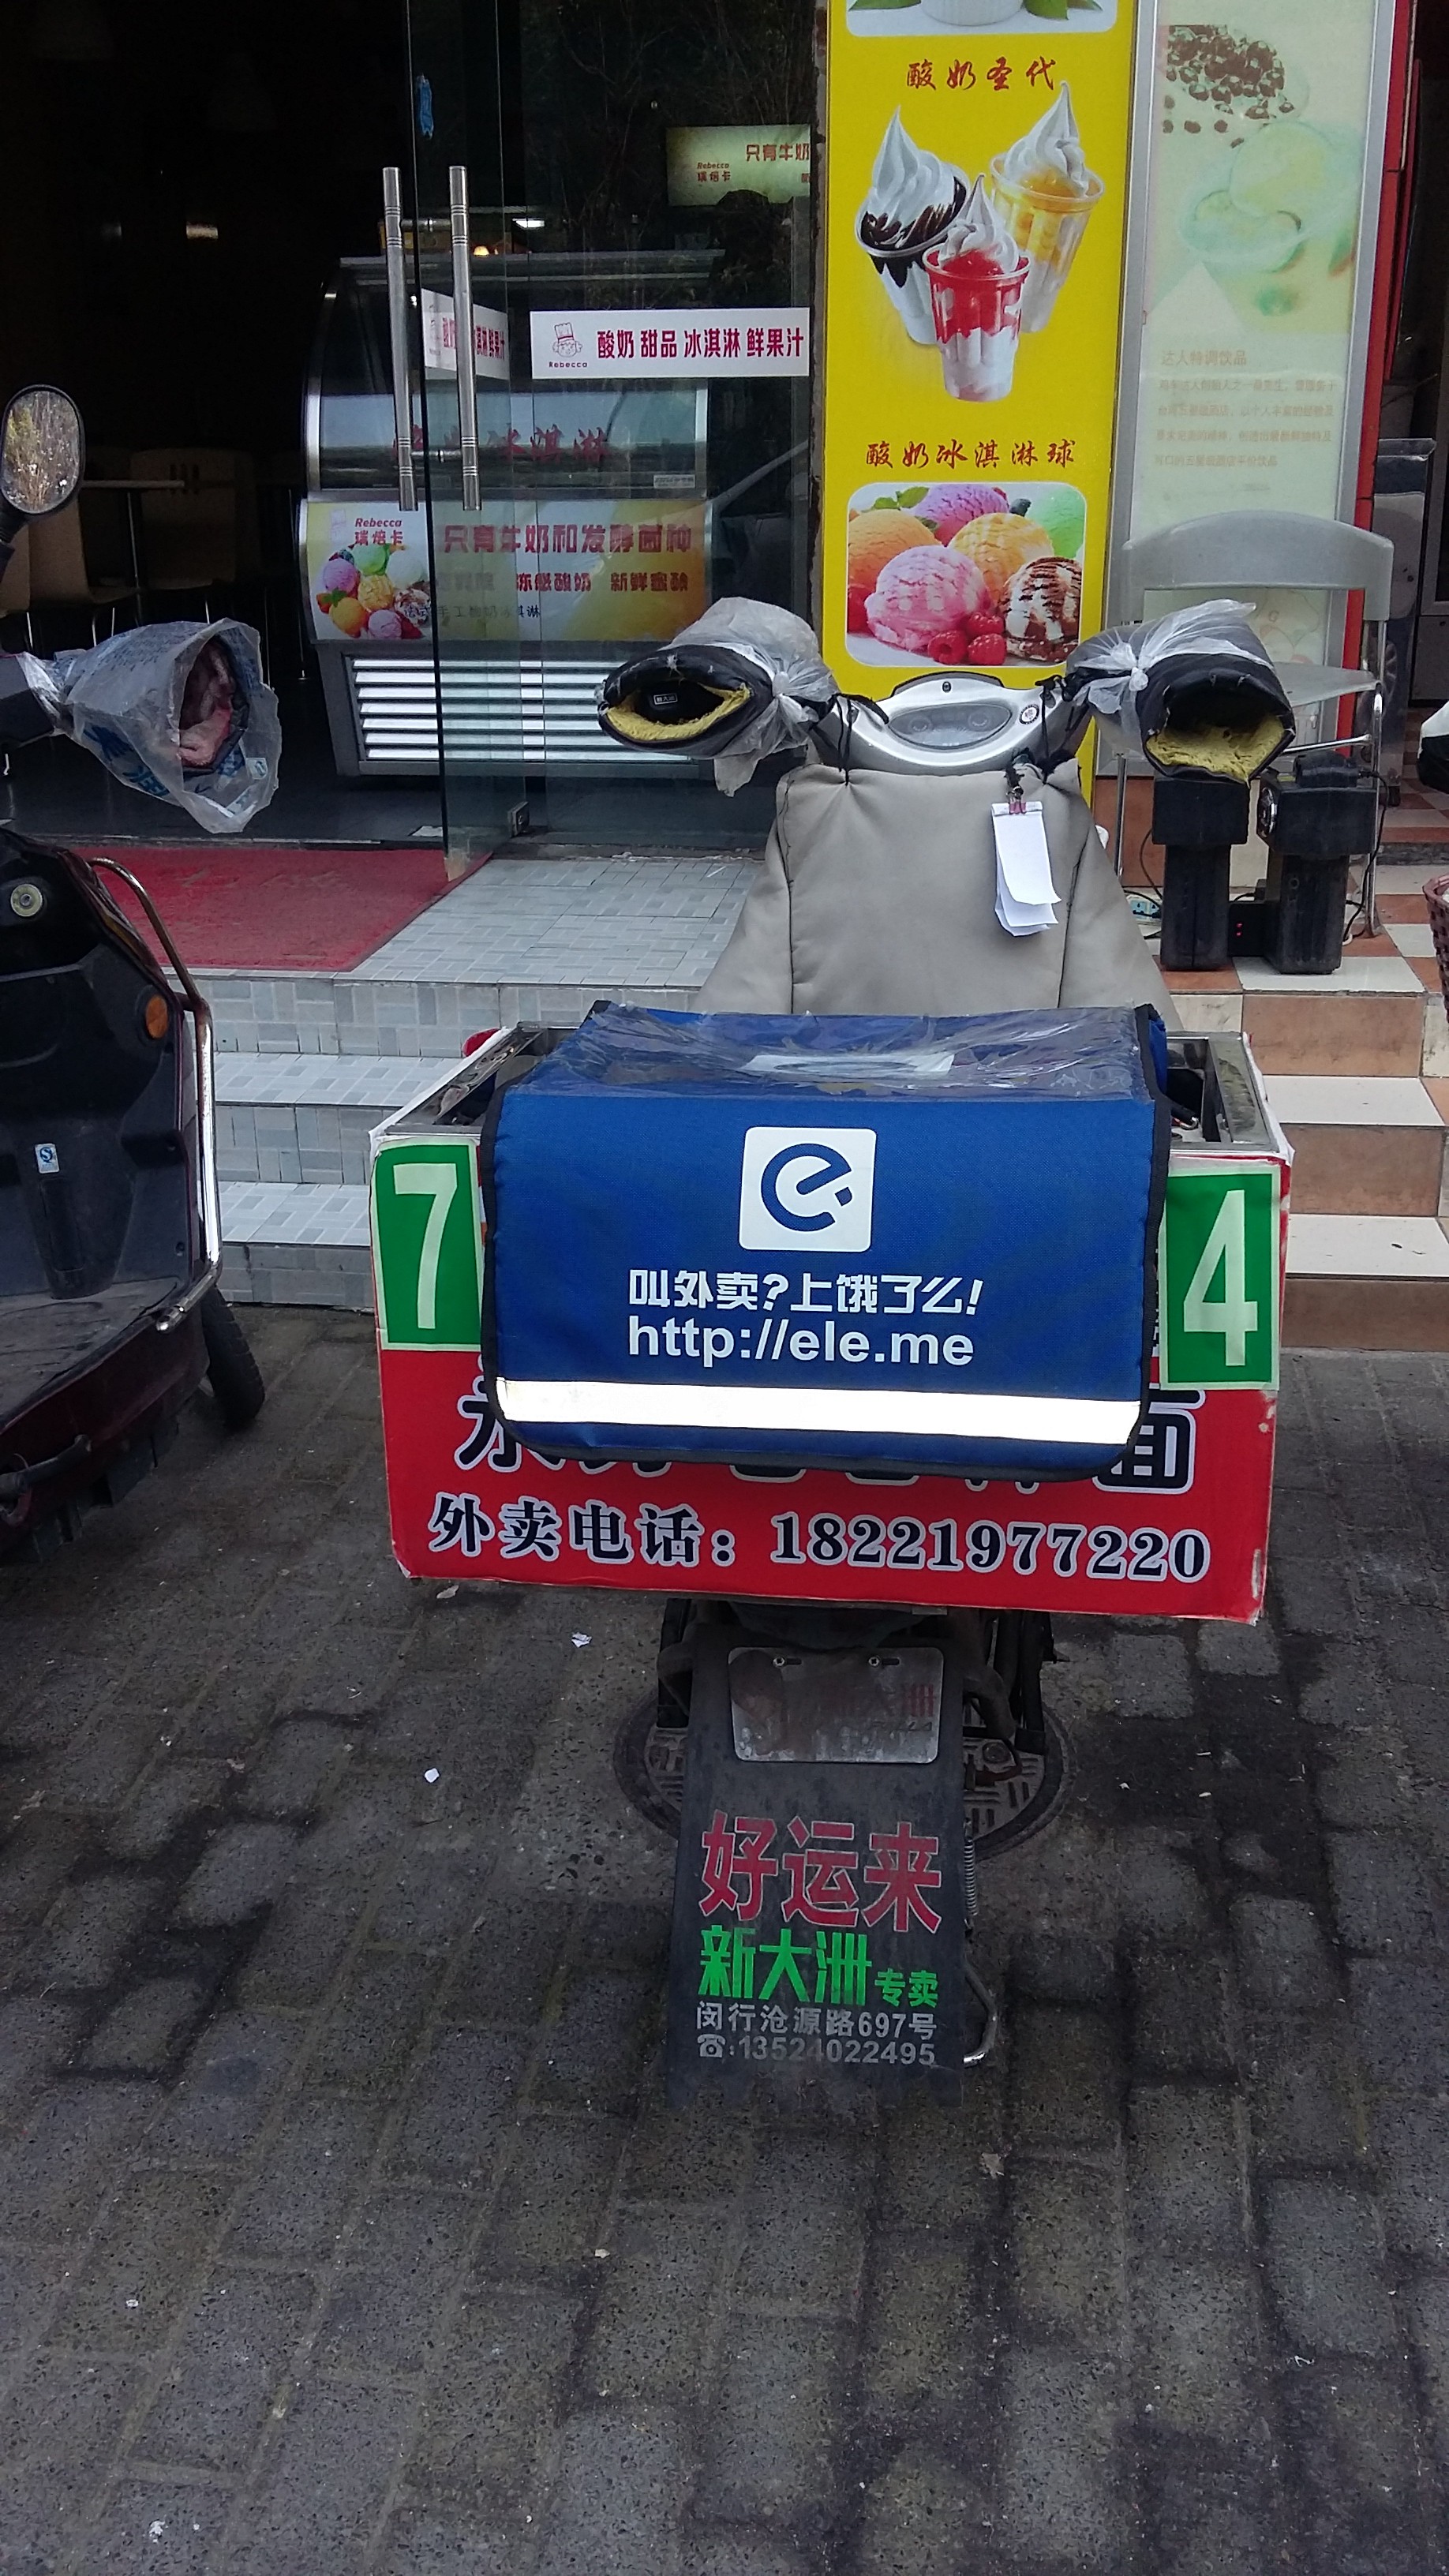 En el-scooter som leverer mat fra en lokal restaurant etter bestillinger fra ele.me